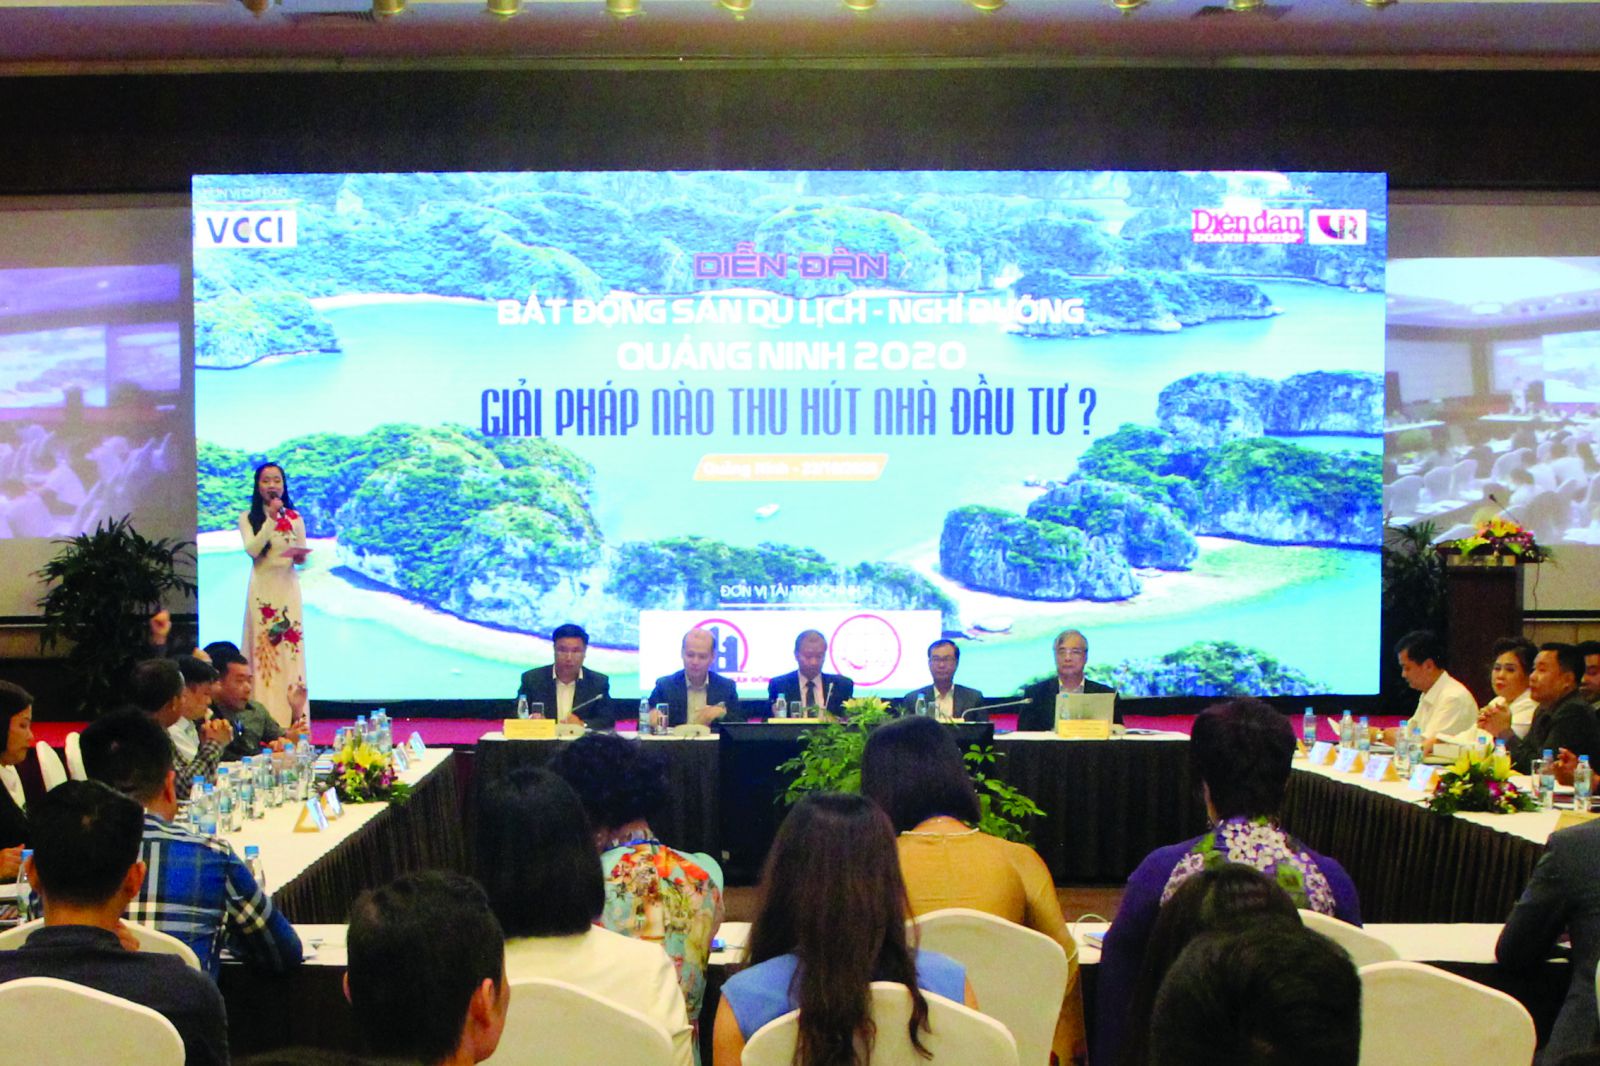  “Diễn đàn Bất động sản Du lịch nghỉ dưỡng Quảng Ninh 2020: Giải pháp nào thu hút các nhà đầu tư?”